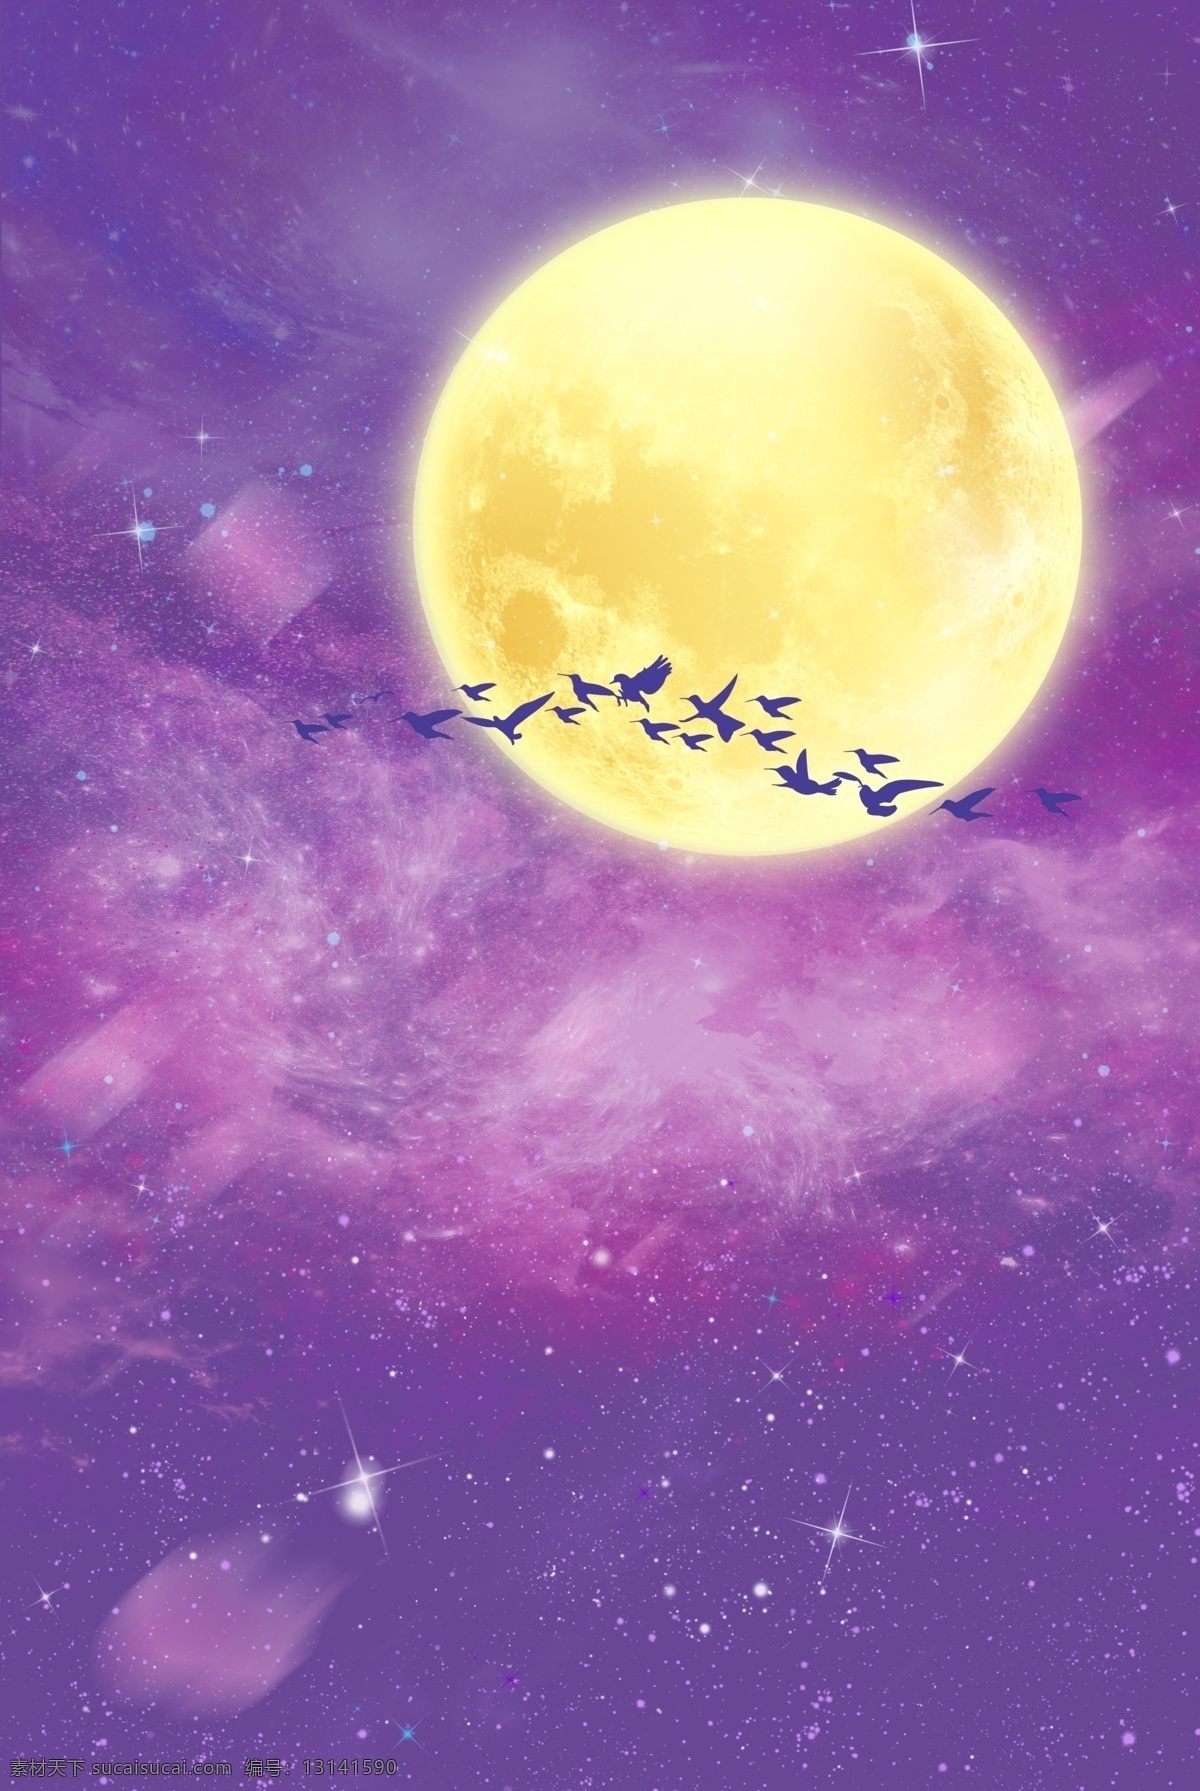 七夕节 紫色 浪漫 天空 月光 背景 月光背景 星星 星空 紫色星空 喜鹊